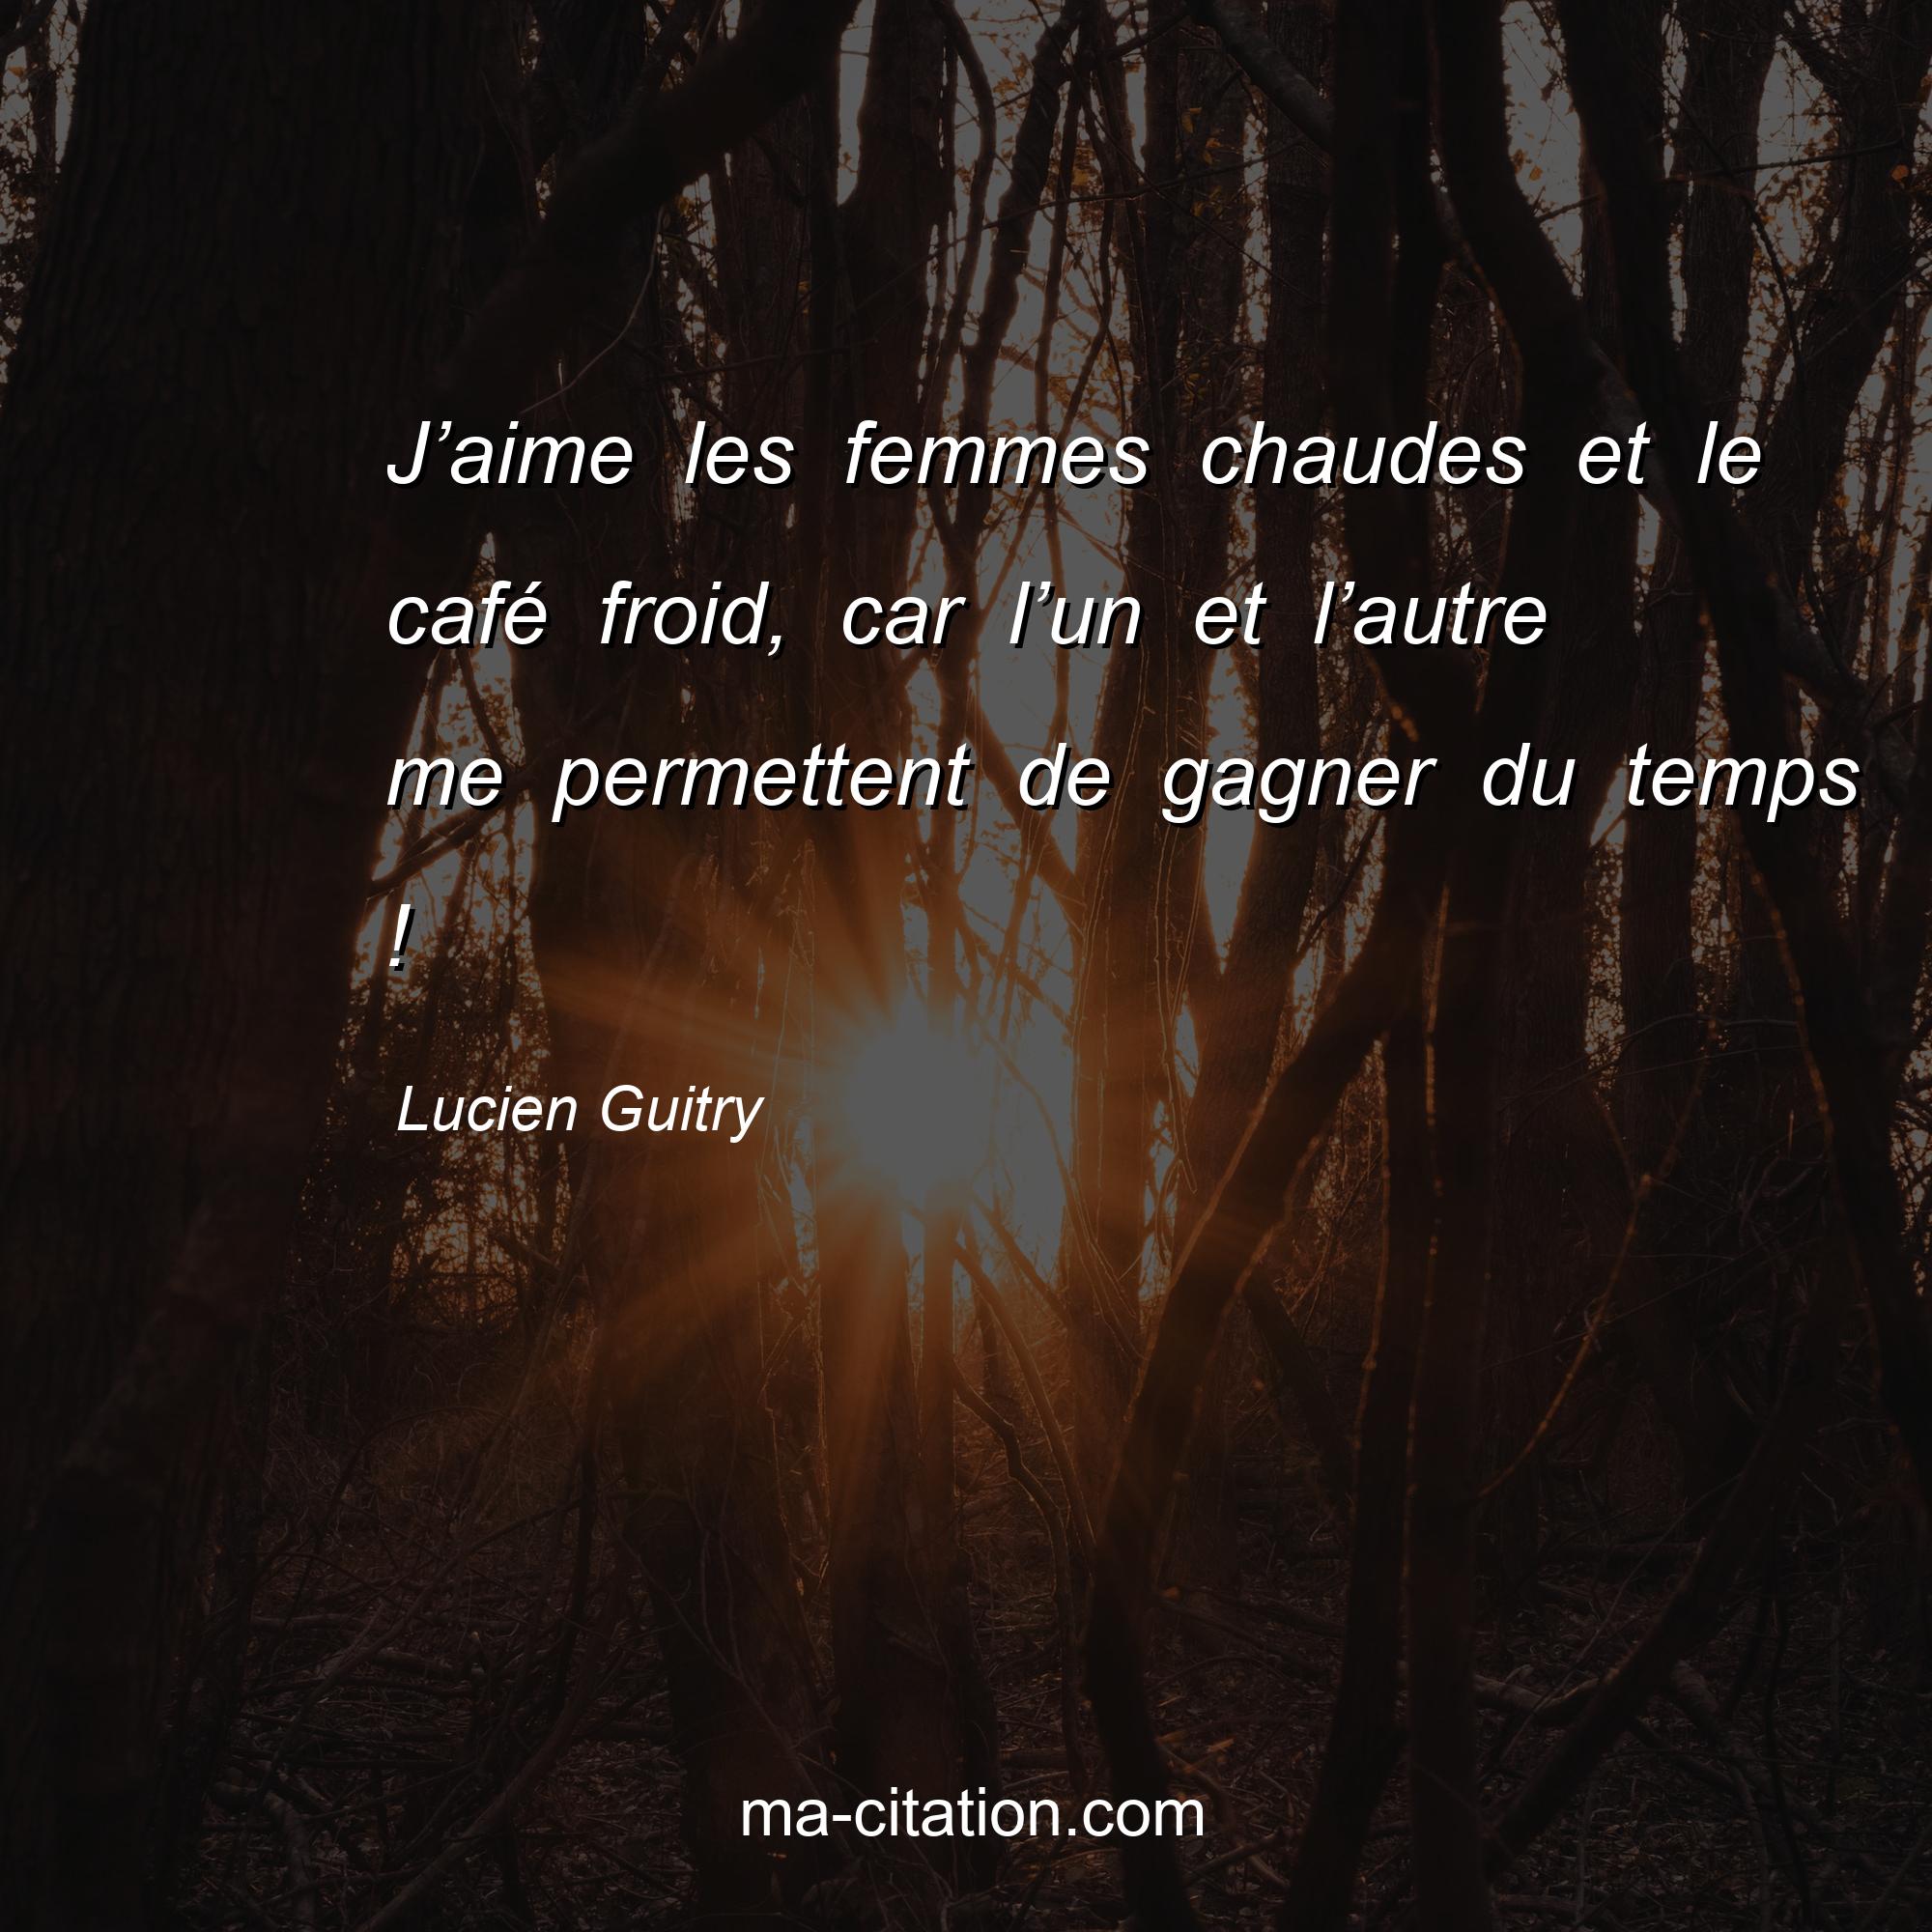 Lucien Guitry : J’aime les femmes chaudes et le café froid, car l’un et l’autre me permettent de gagner du temps !